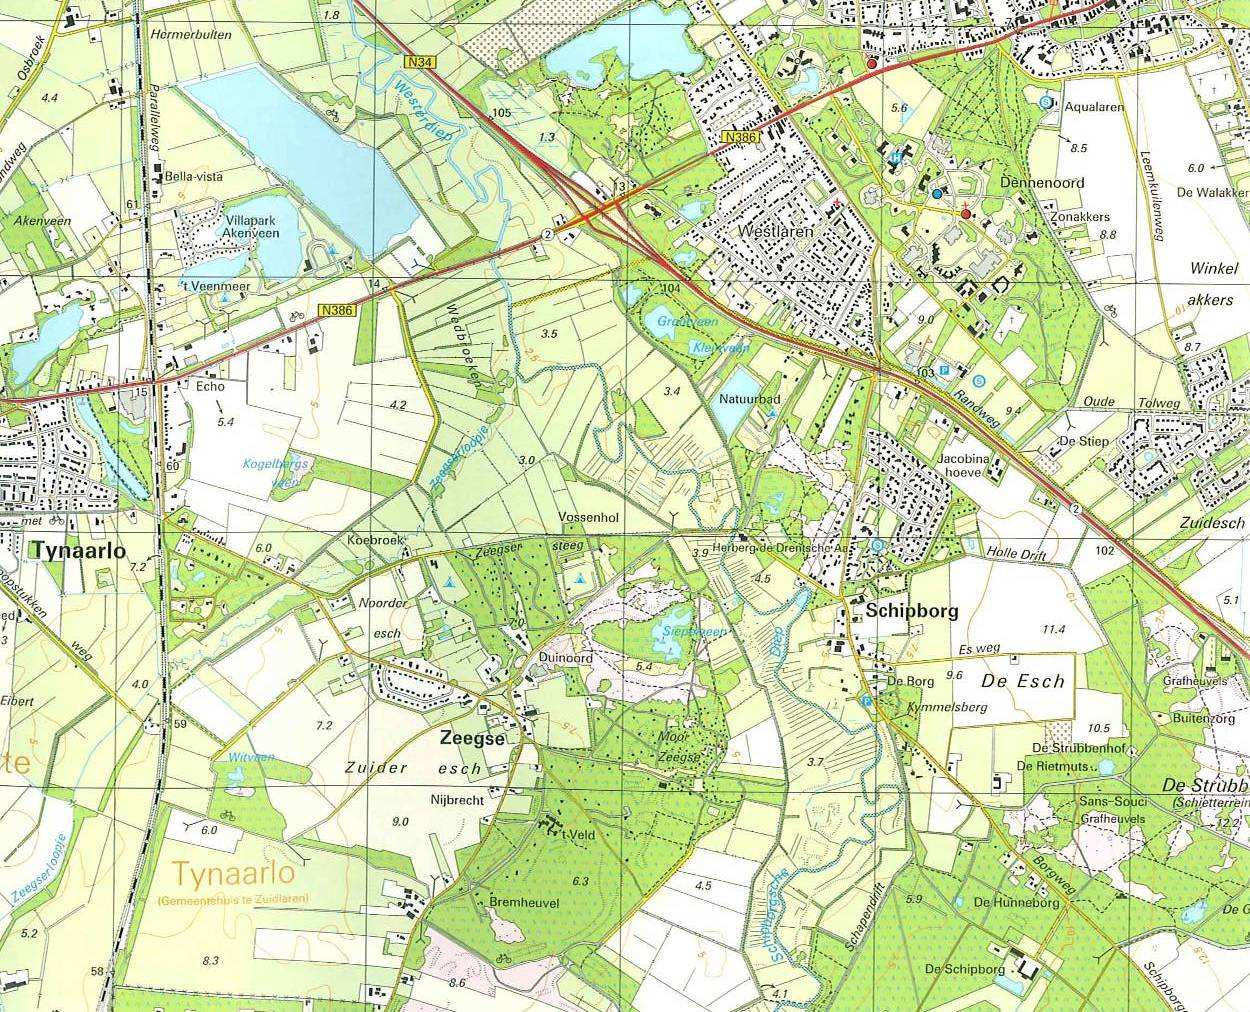 Schipborg in 2006 (Topografische atlas, ANWB)